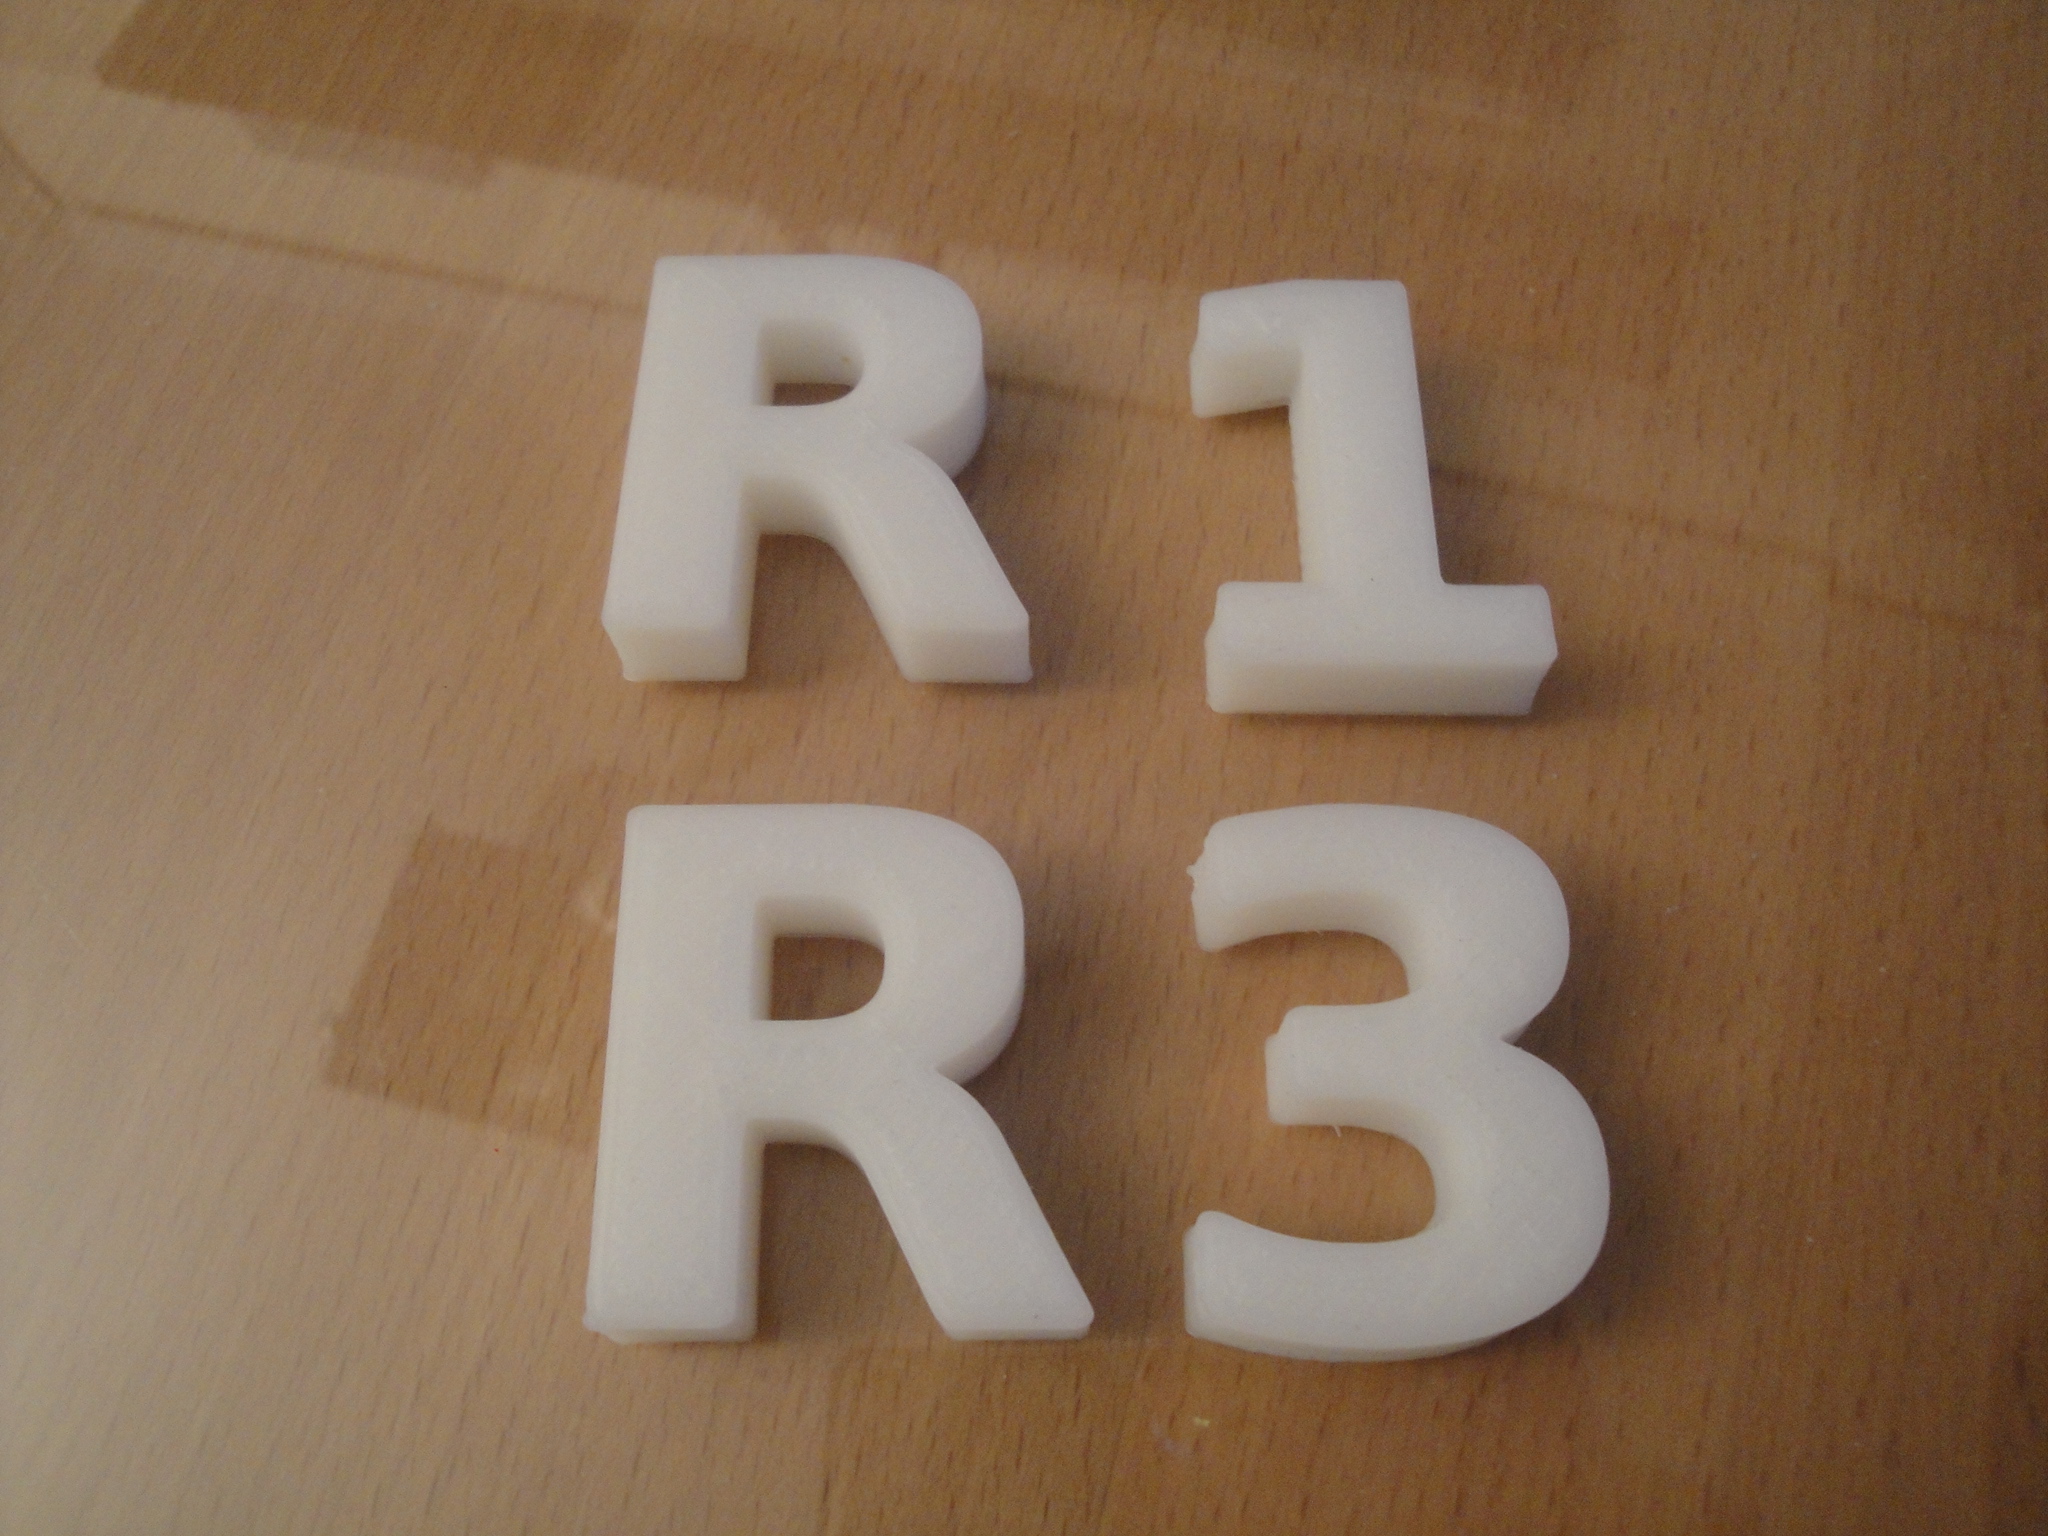 Letras para R1 y R3 (click para ampliar)